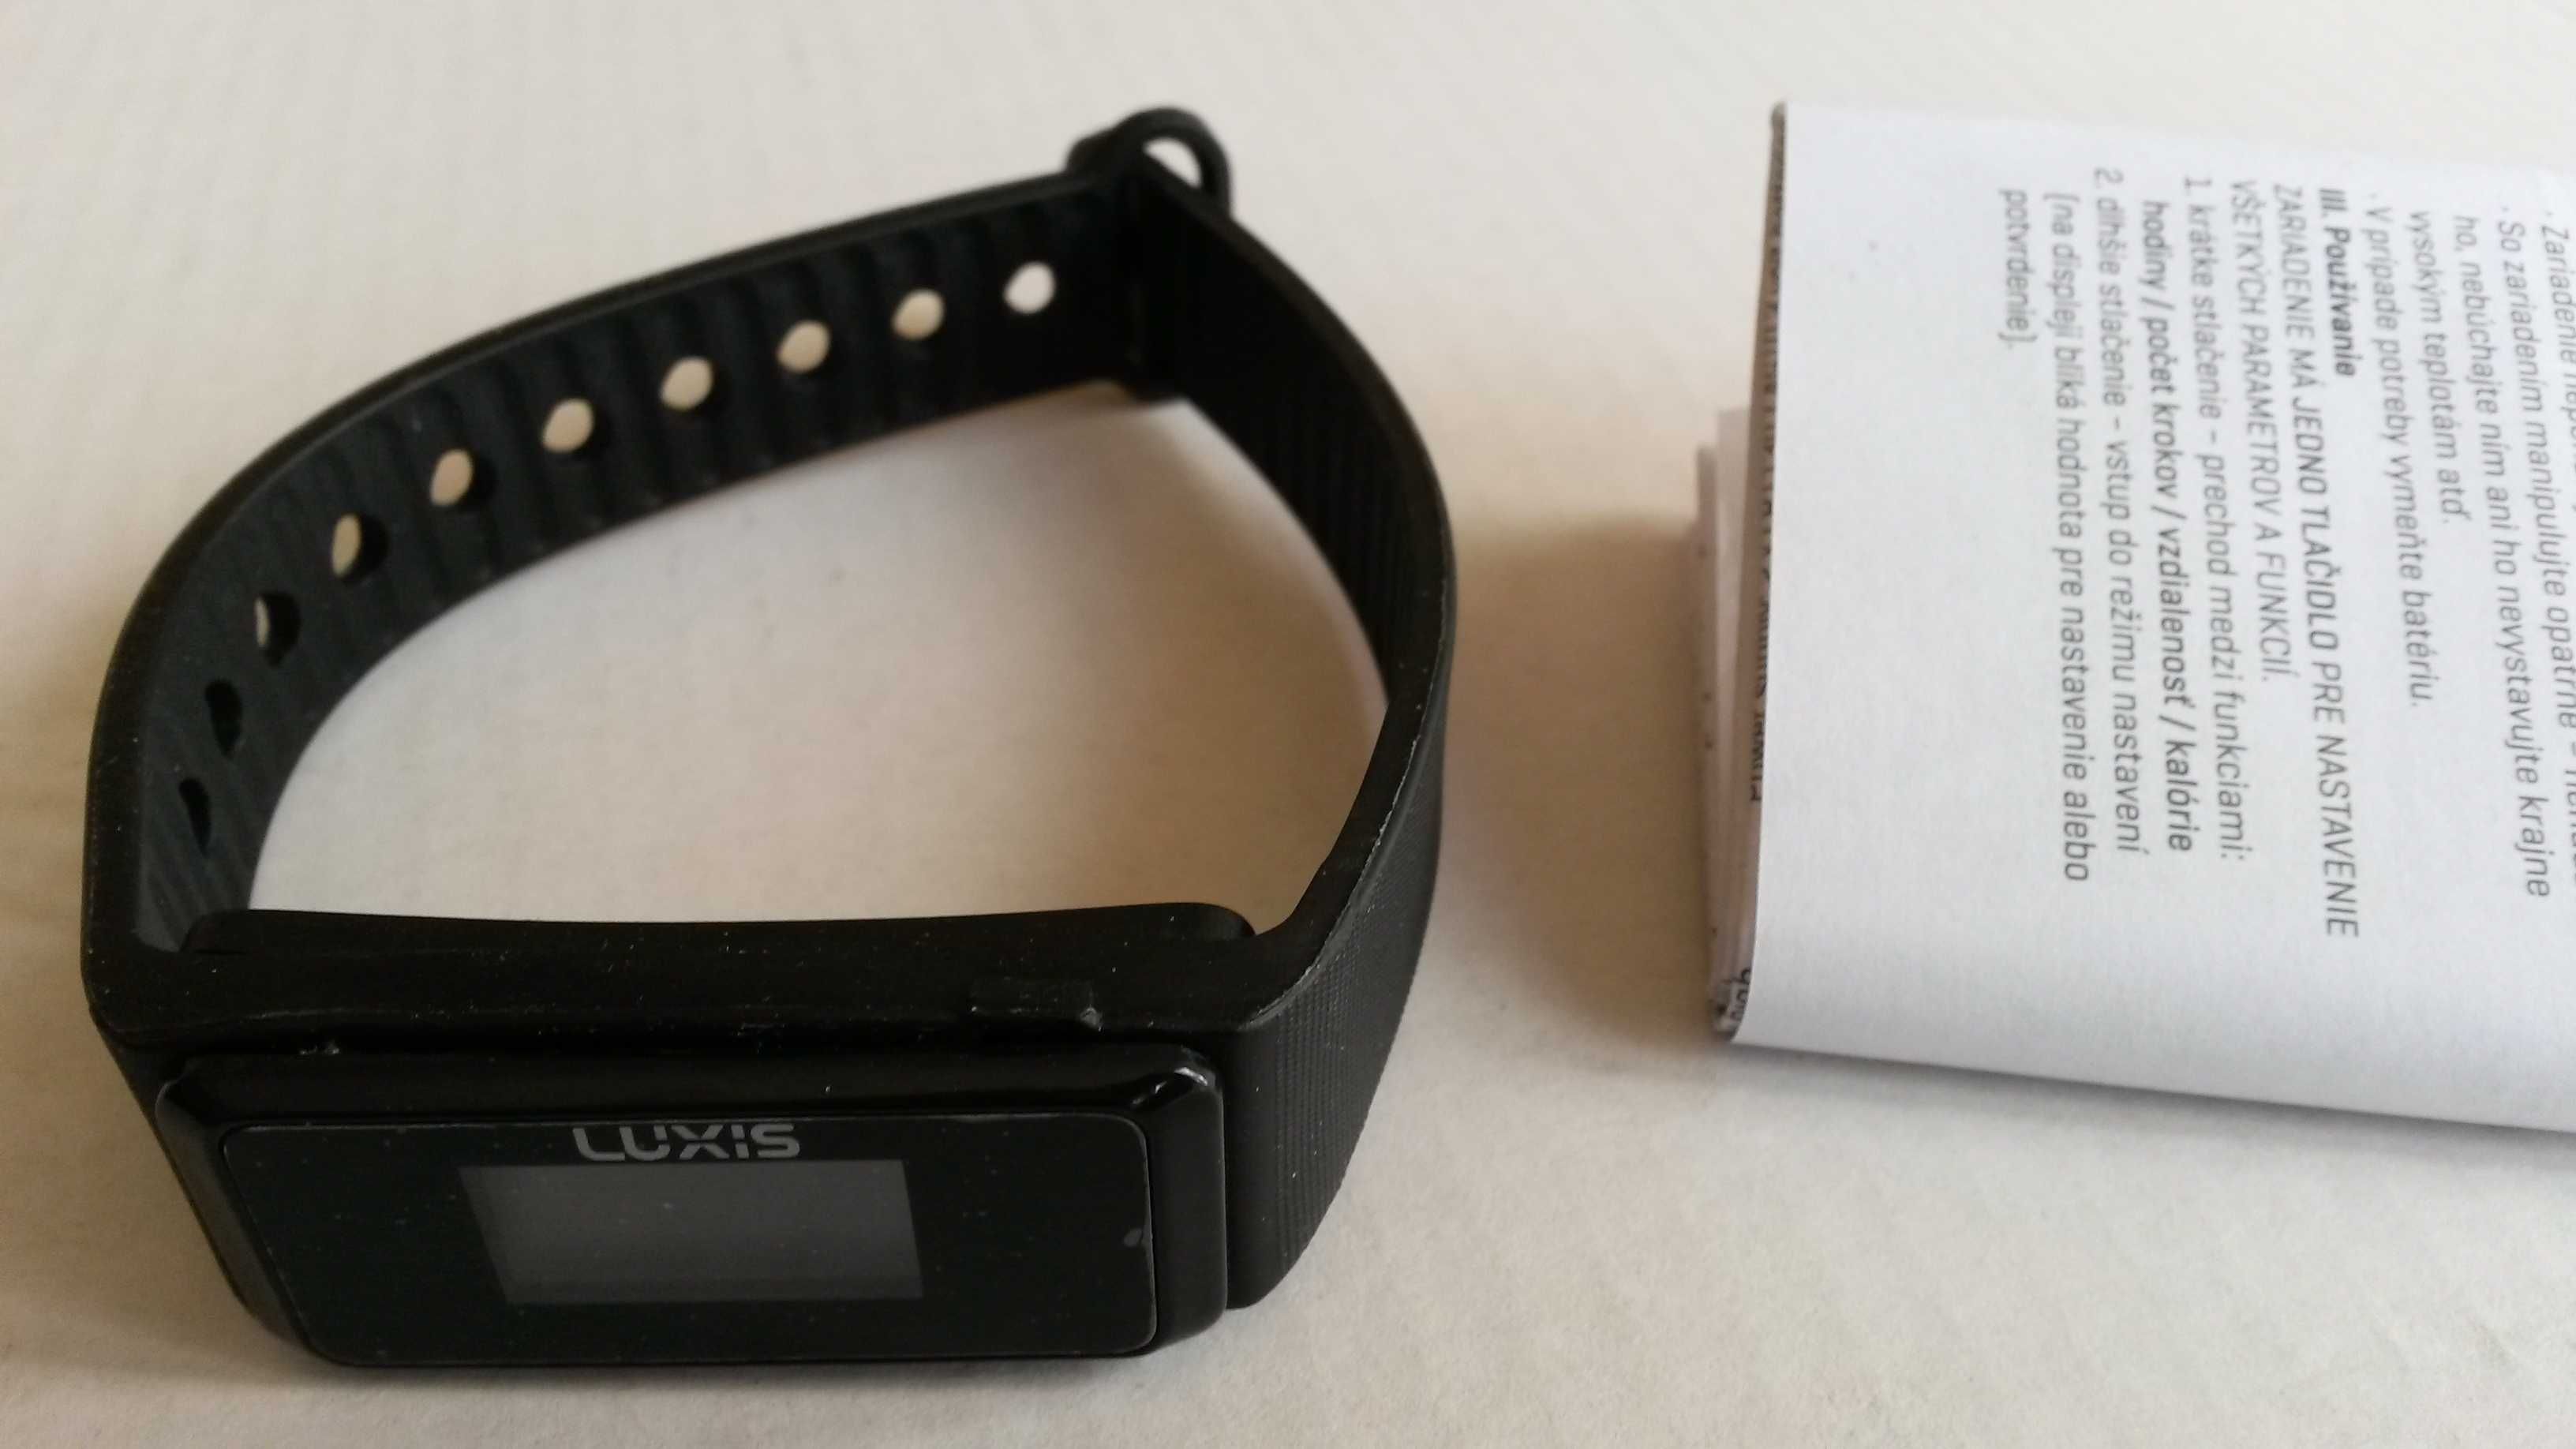 Krokomierz smartband zegarek opaska sportowa LUXIS